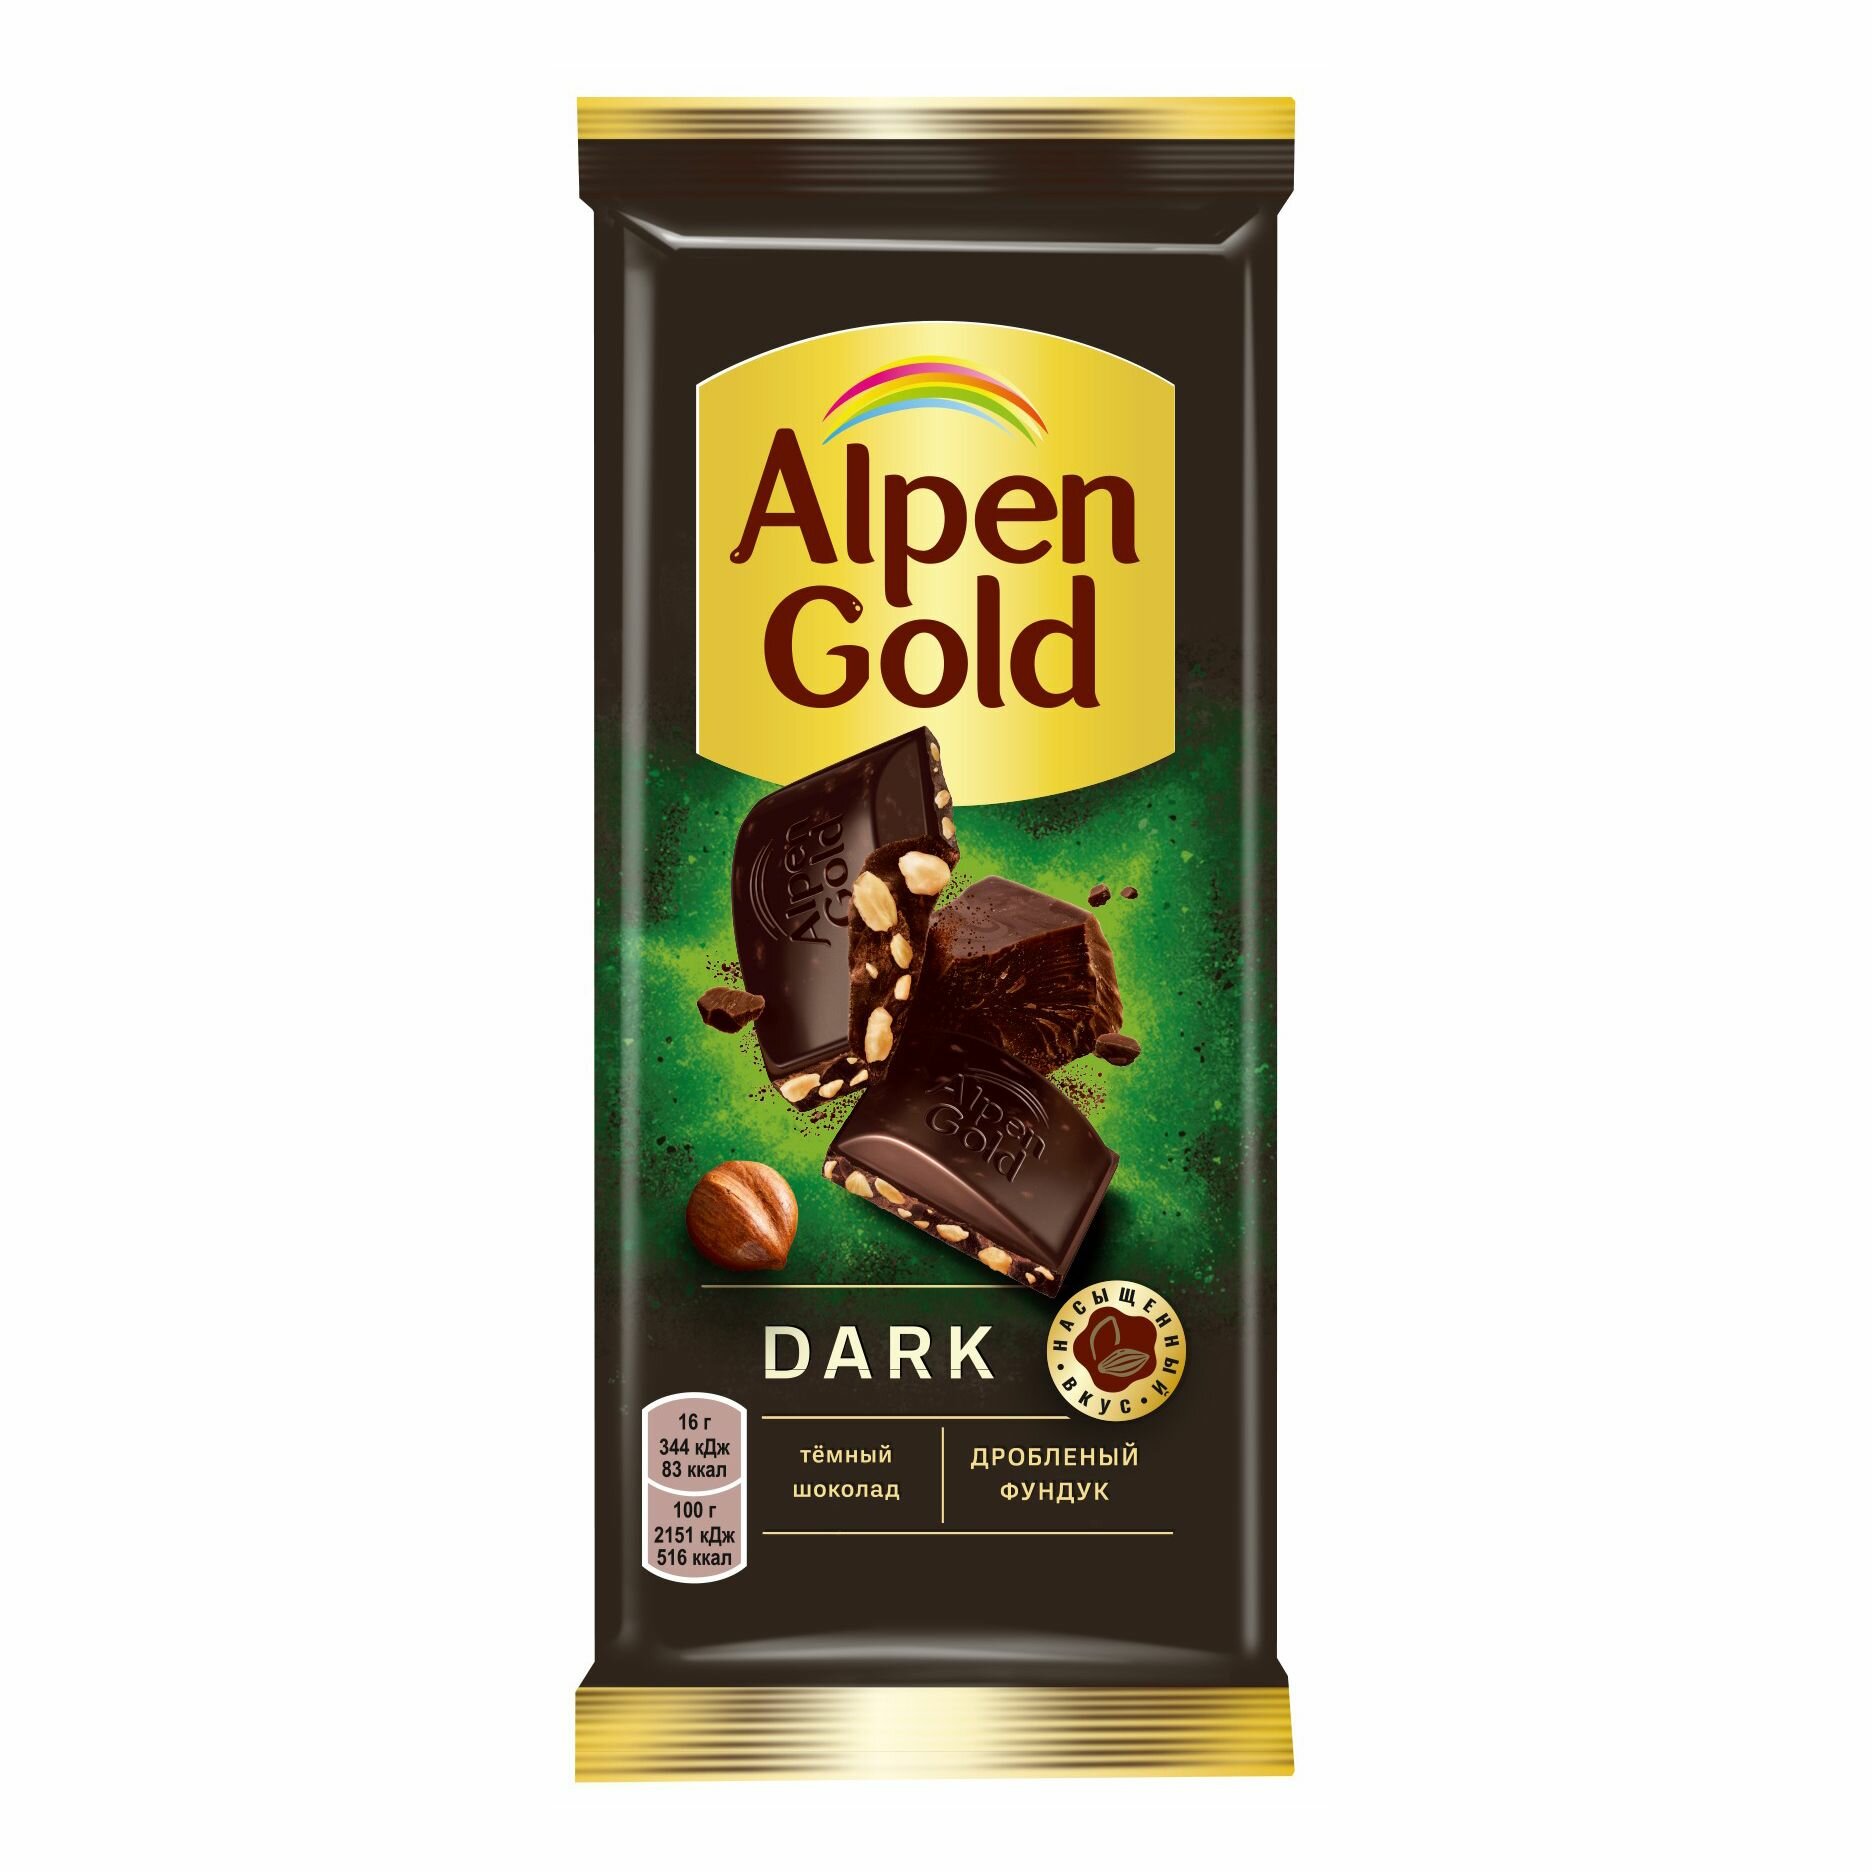 Плитка Alpen Gold темный шоколад с дробленым фундуком 80 г